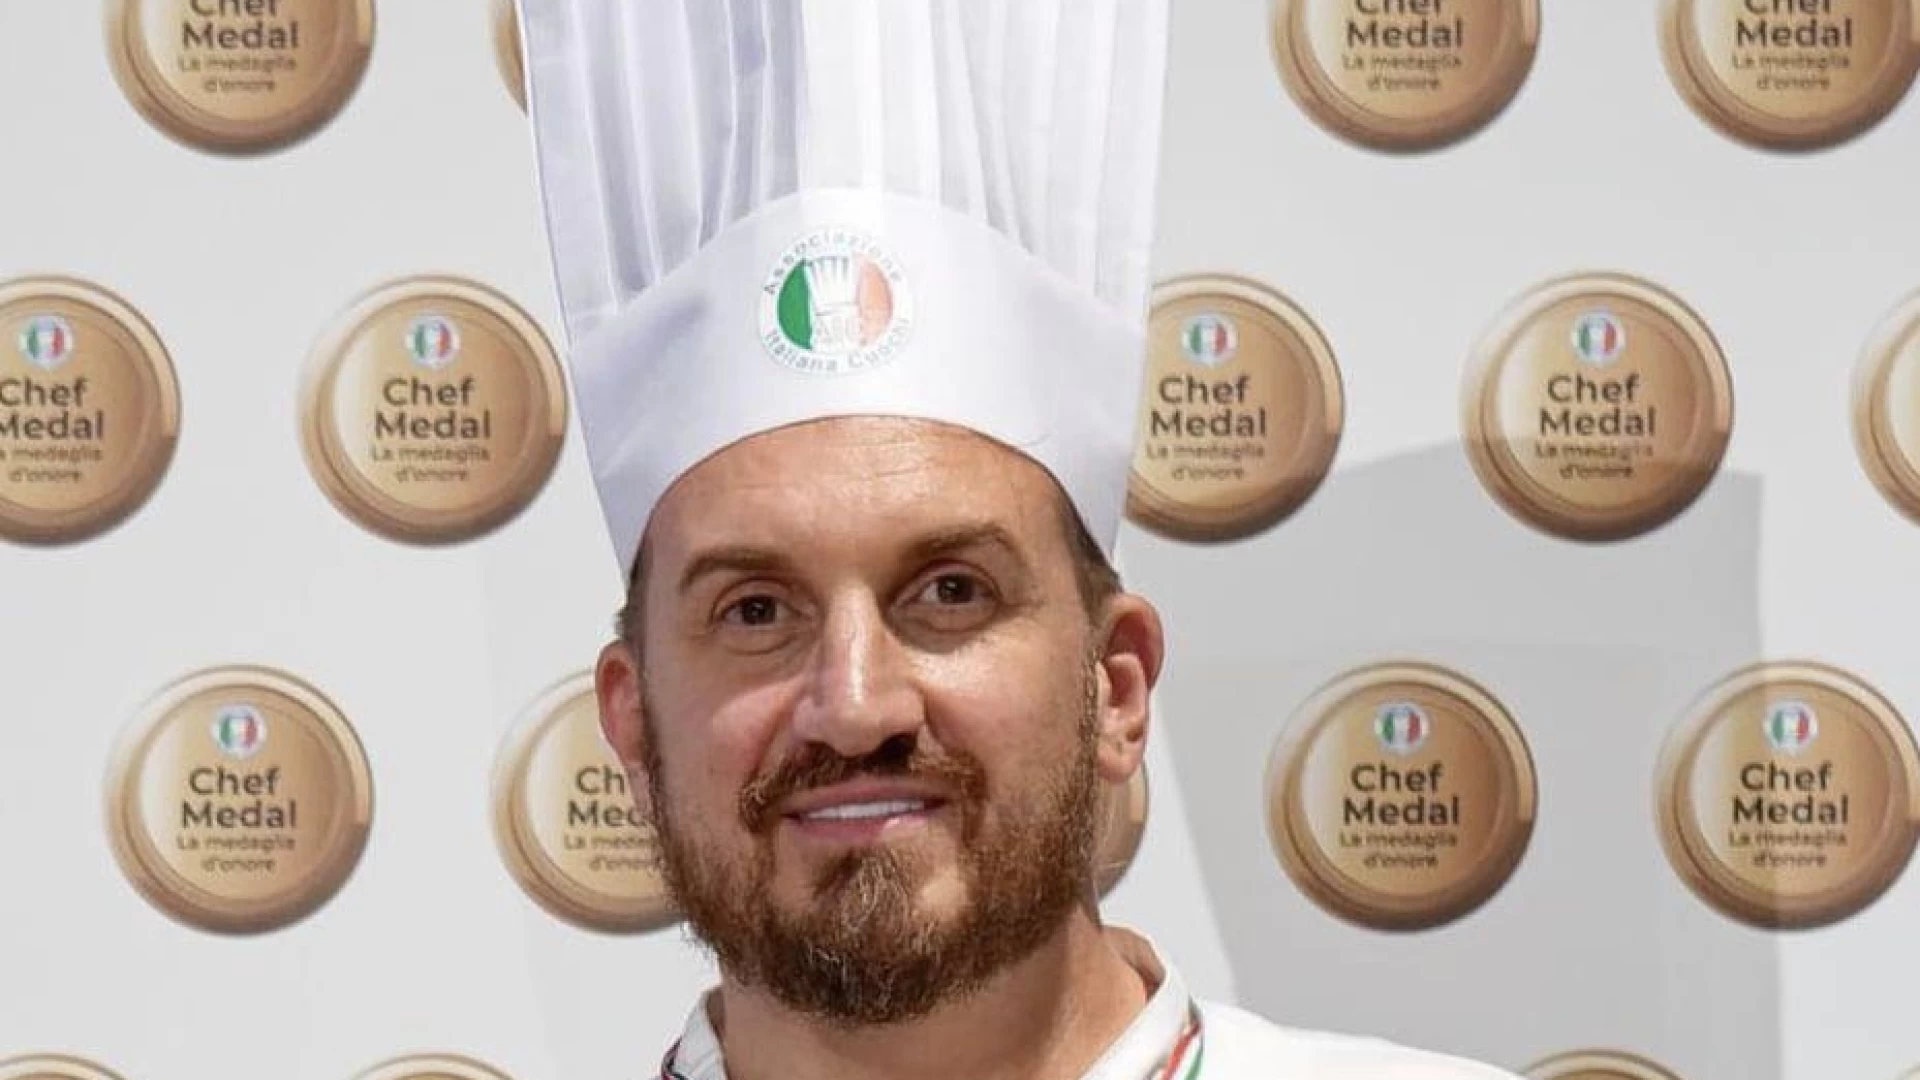 Lo chef Domenico Ruggeri su Sky per il “Miglior Chef d’Italia”.